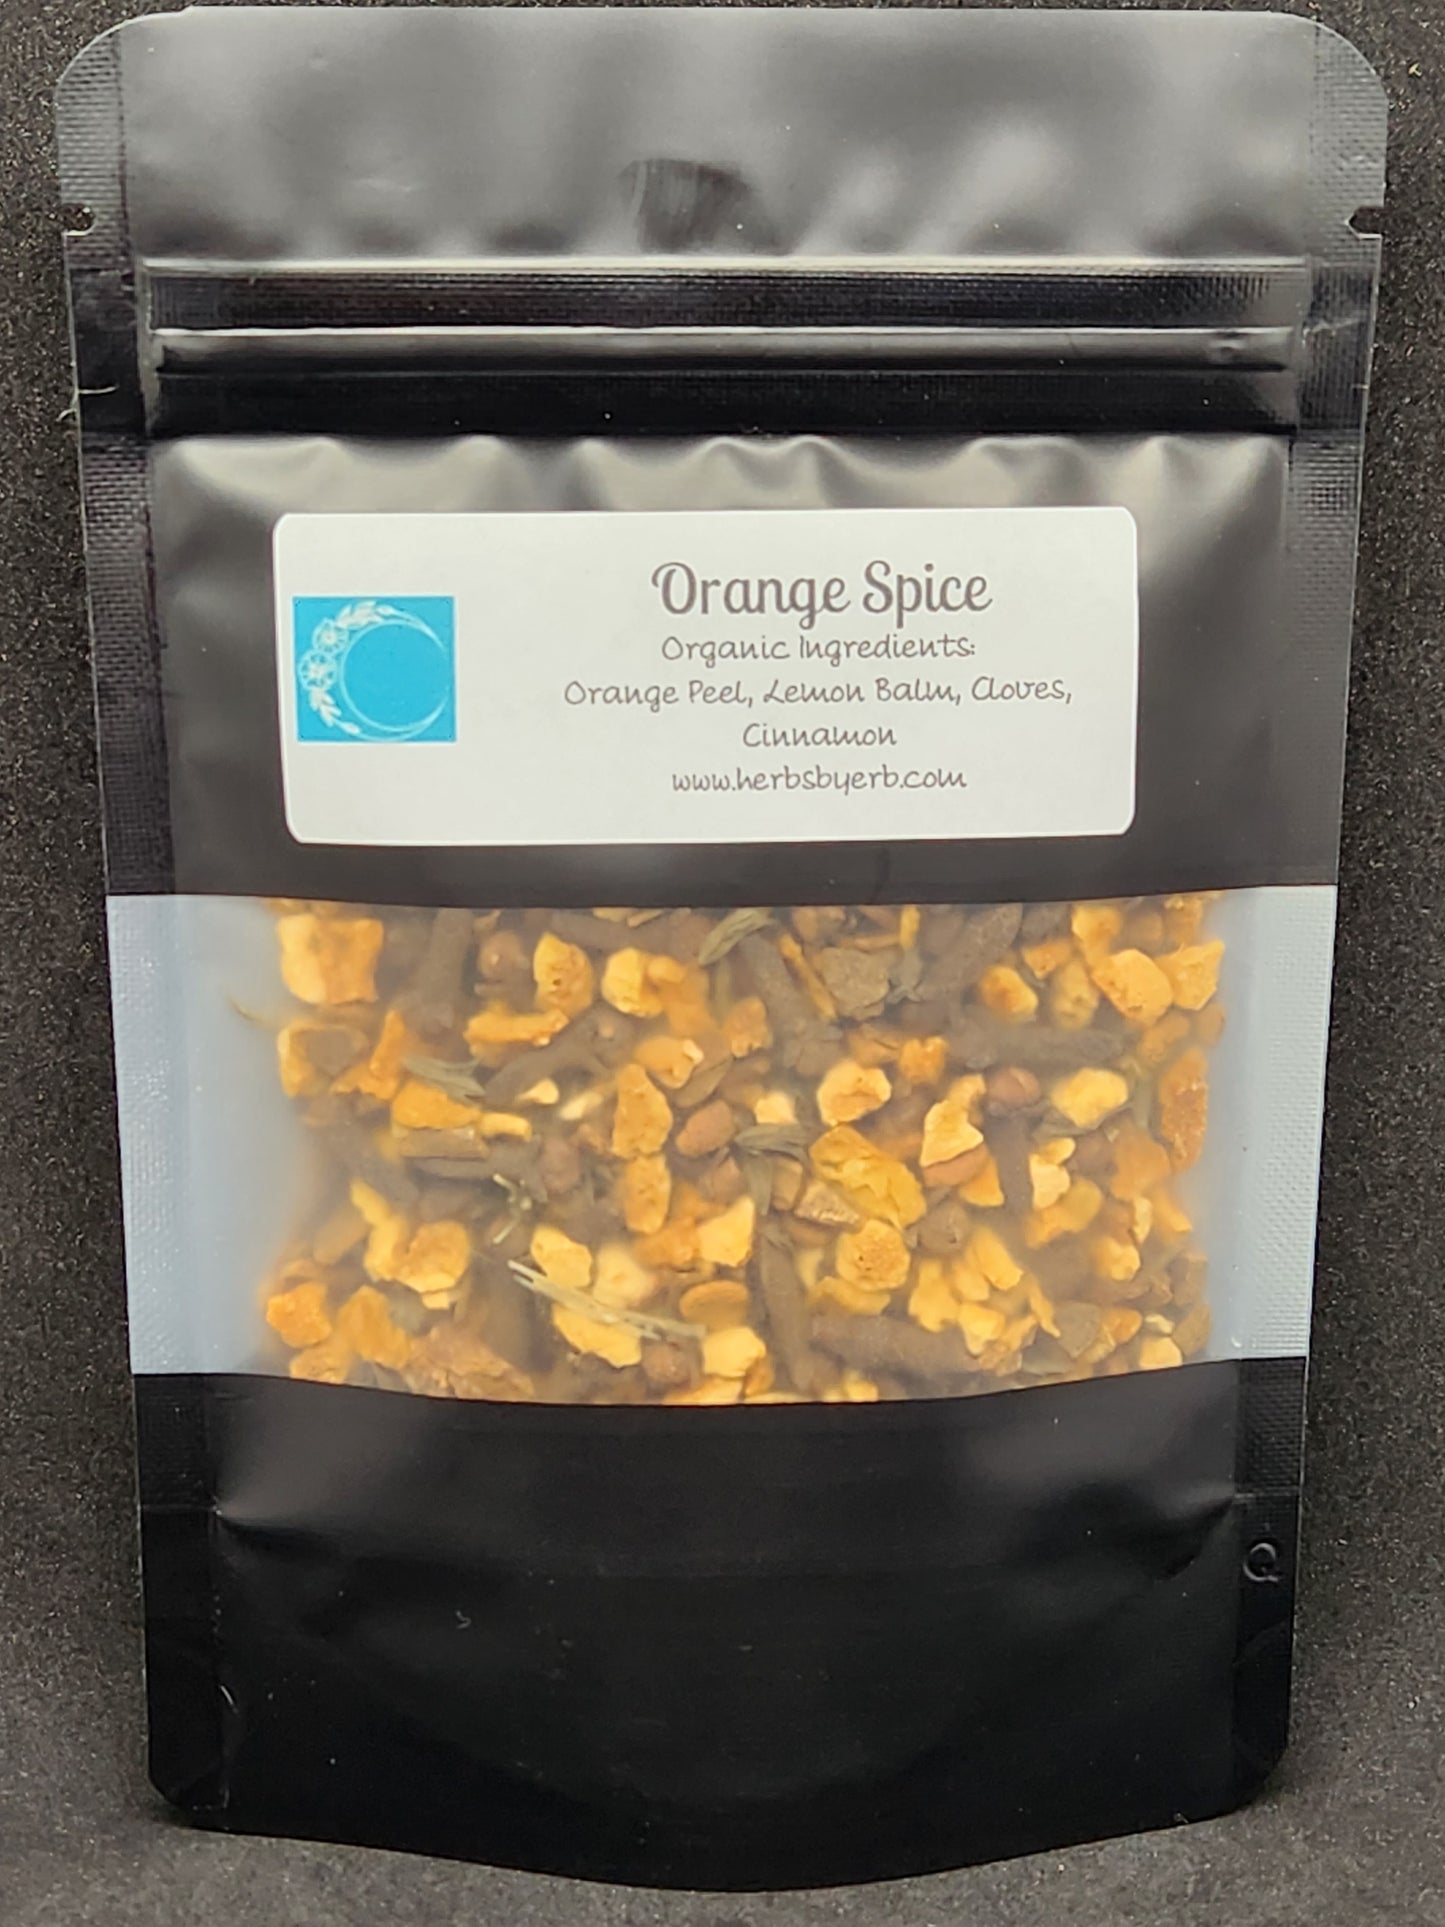 Orange Spice - Herbs by Erb